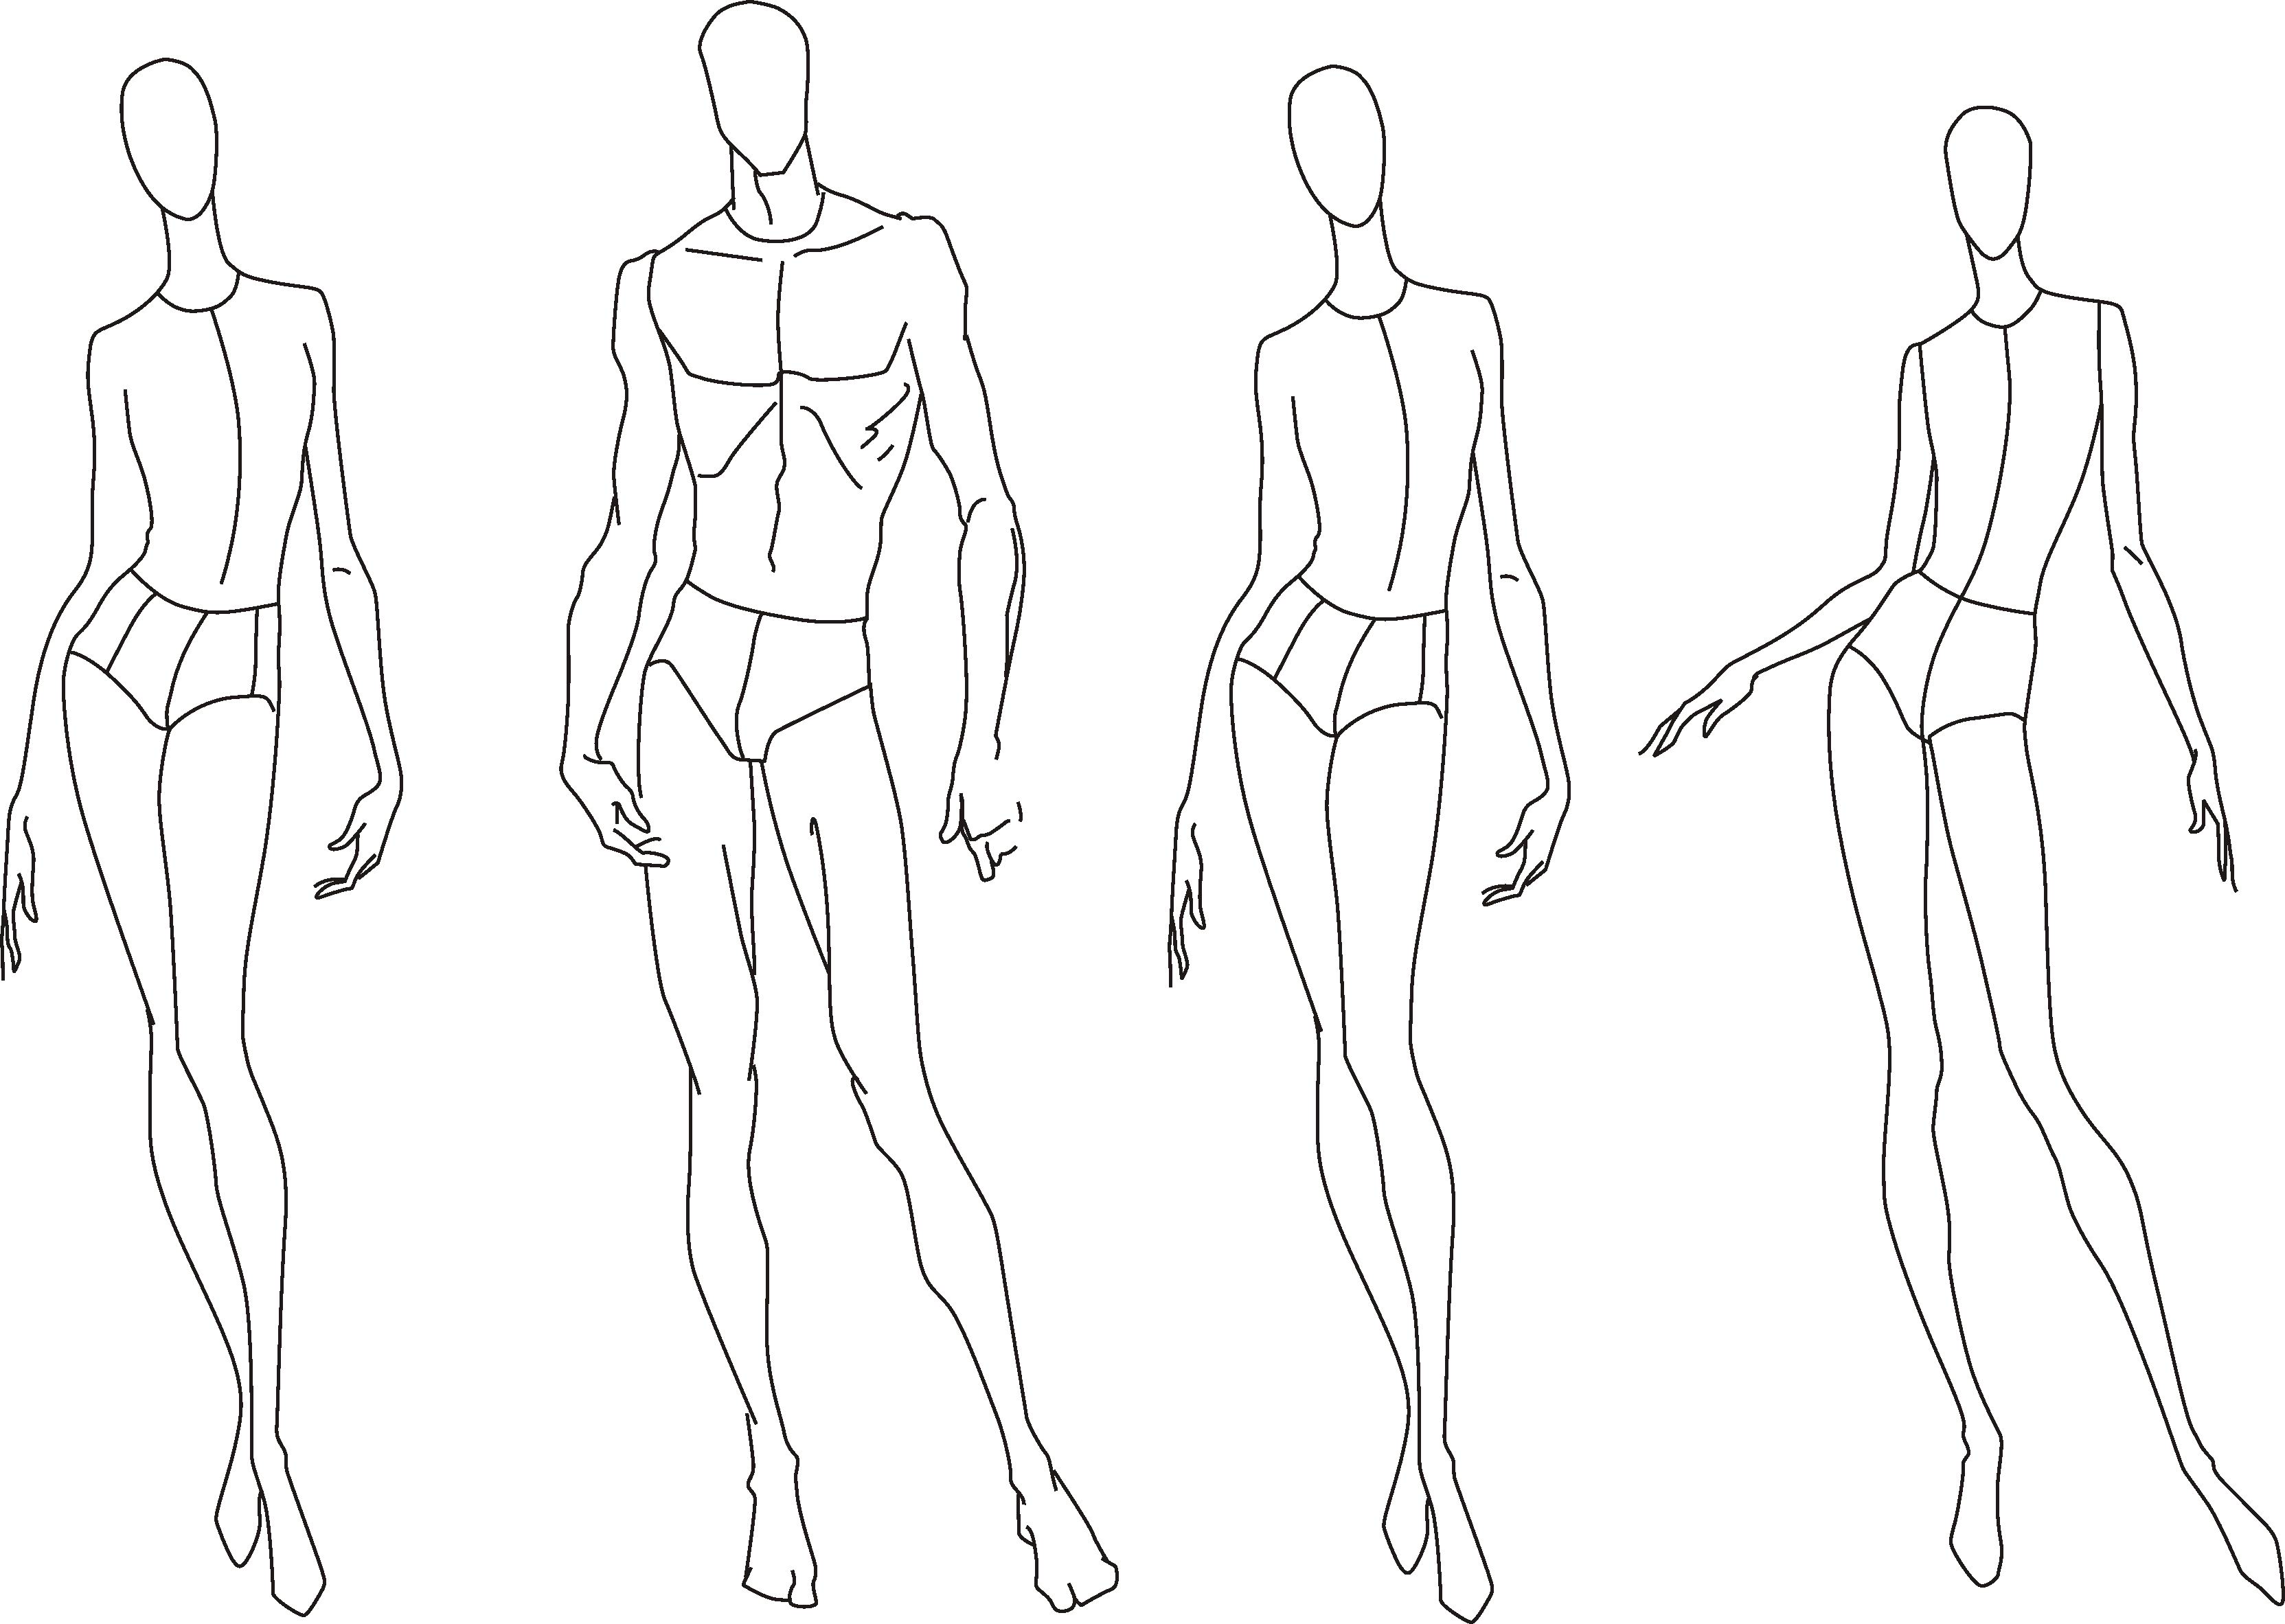 人体模型画画线稿图片